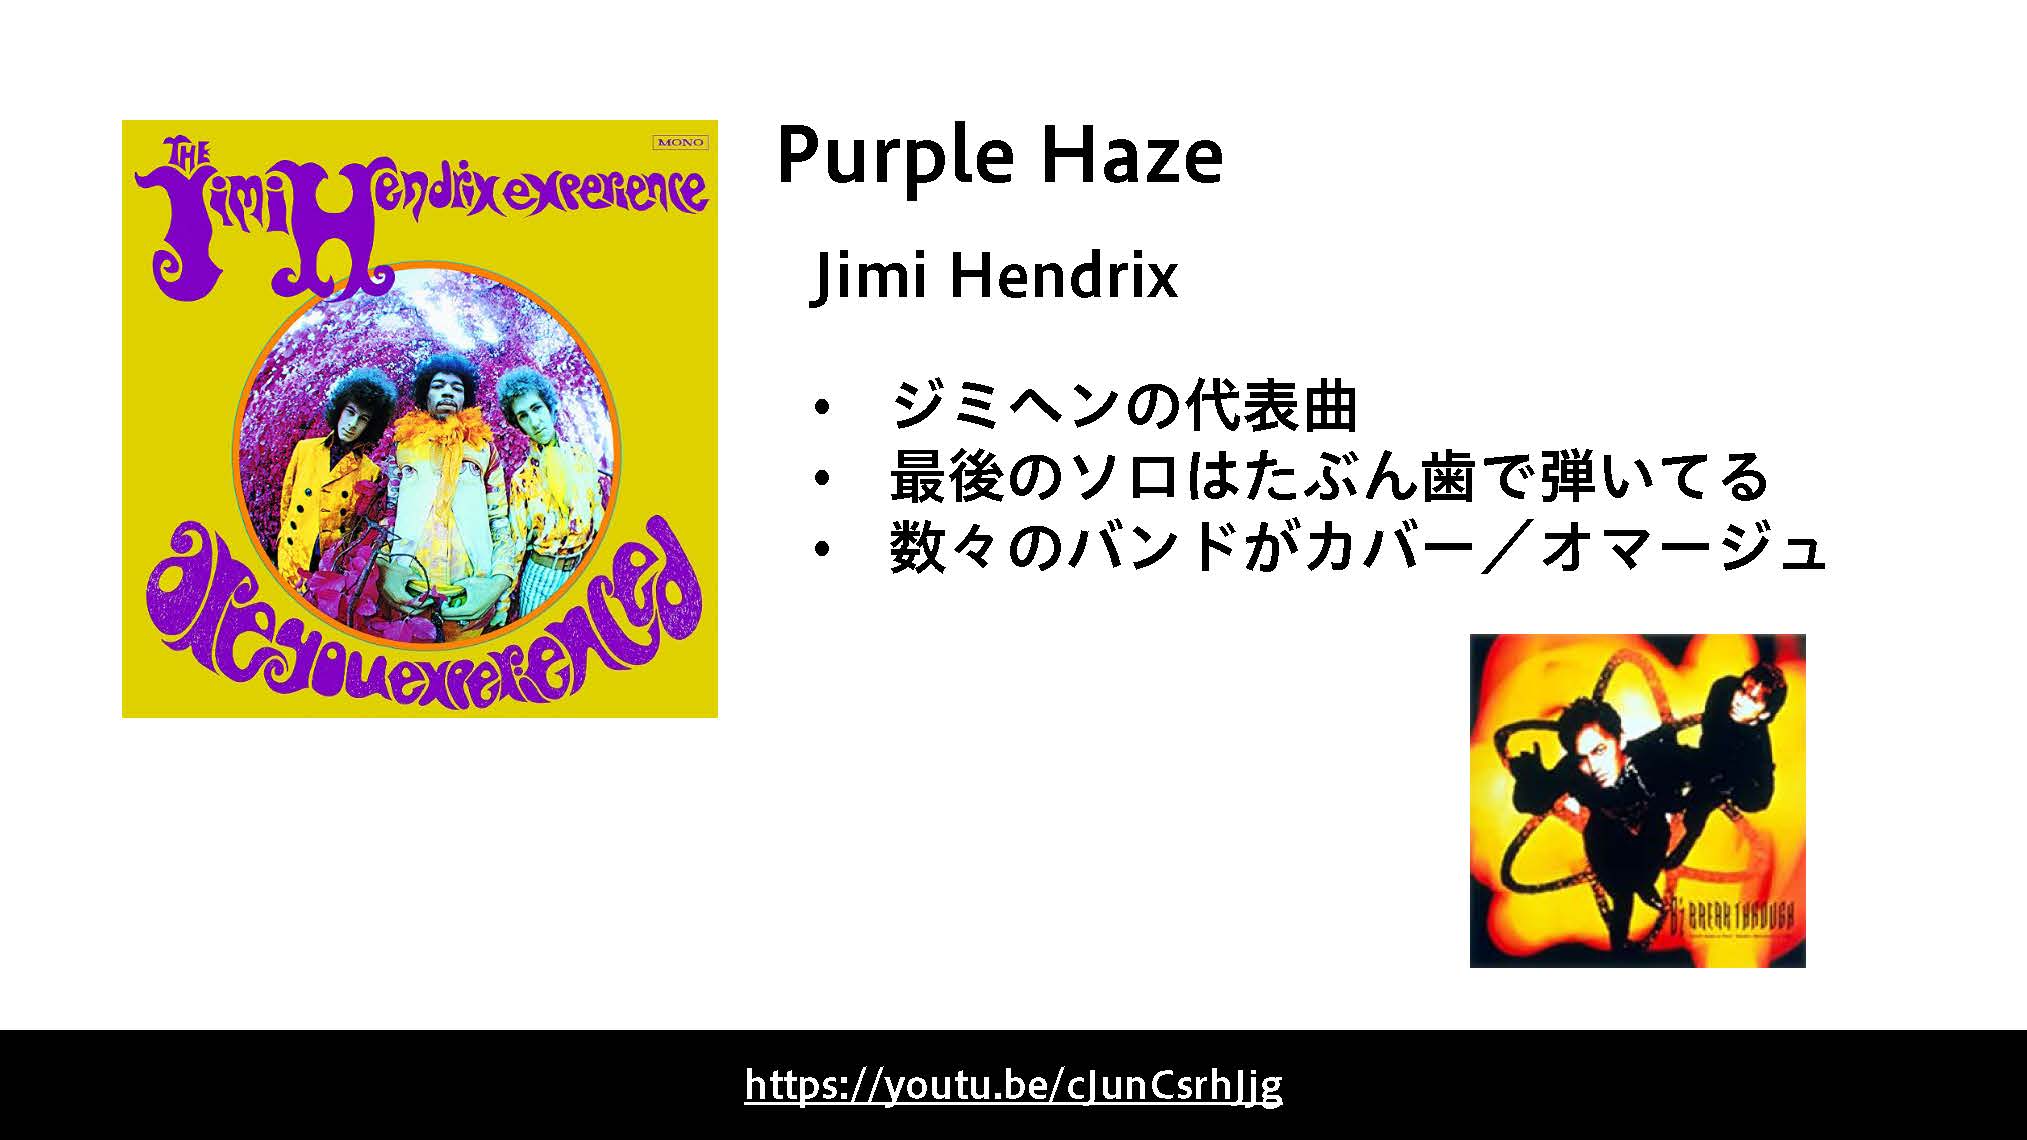 Purple Hazeは、ギターの神様、ジミ・ヘンドリックスの代表曲です。